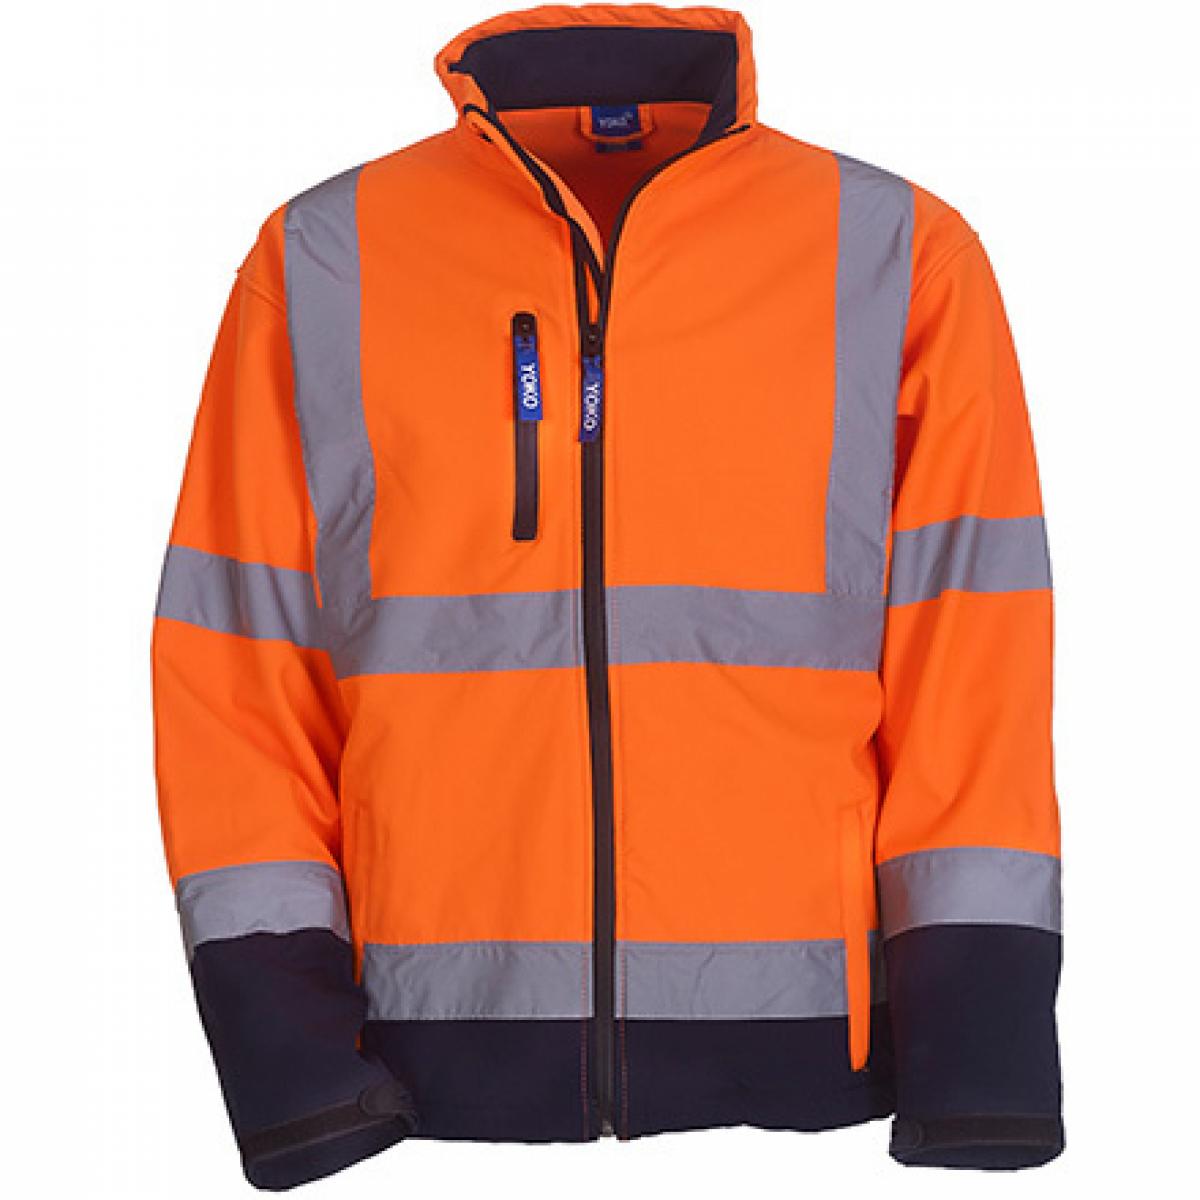 Hersteller: YOKO Herstellernummer: HVK09 Artikelbezeichnung: High Visibility 2 Bands & Braces Softshell Jacket Farbe: Hi-Vis Orange/Navy